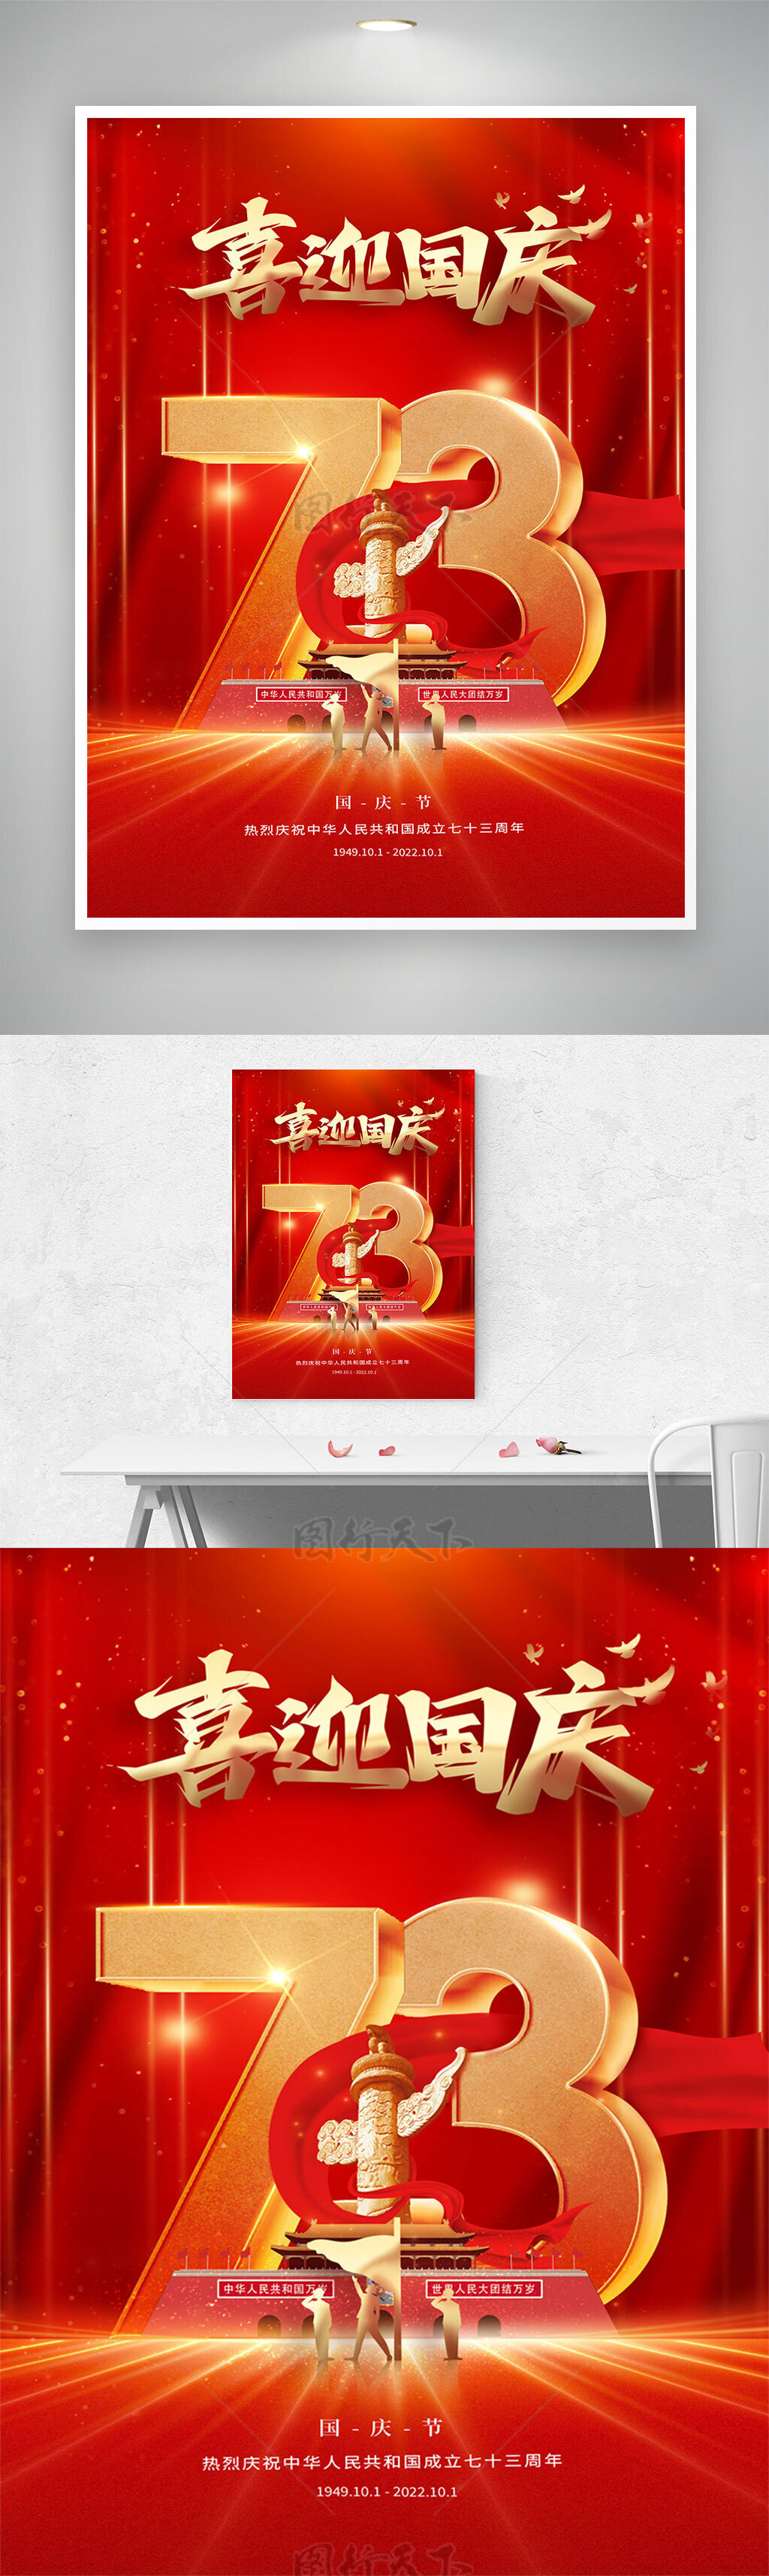 国庆节海报大气红色73周年喜迎国庆展板